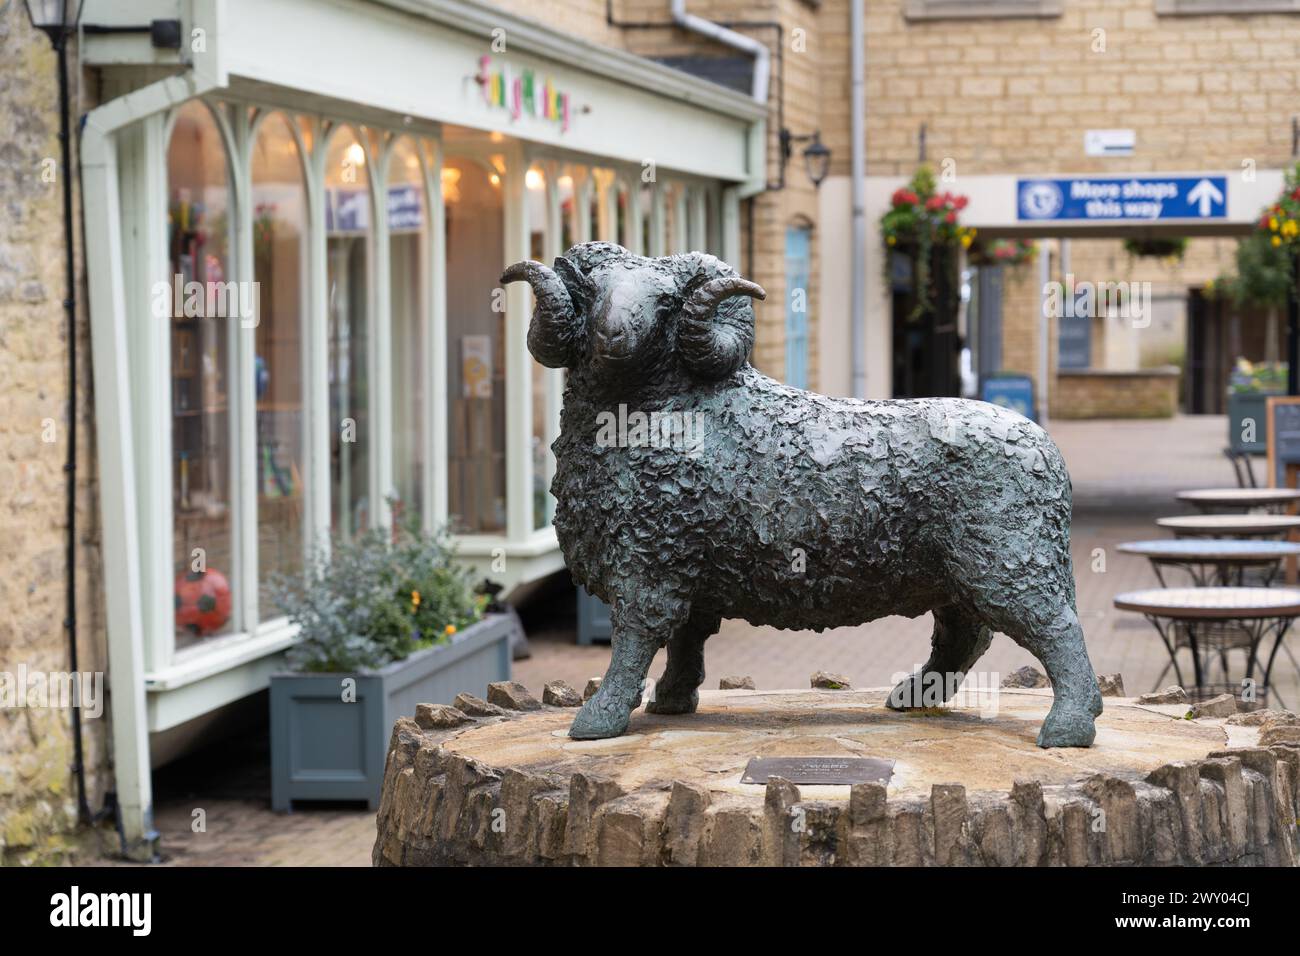 La sculpture Ram dans le quartier commercial de Woolmarket a été sculptée par Jill Tweed FRBS et dévoilée par Joanna Trollope le 19 avril 1997. Cirencester, Royaume-Uni Banque D'Images